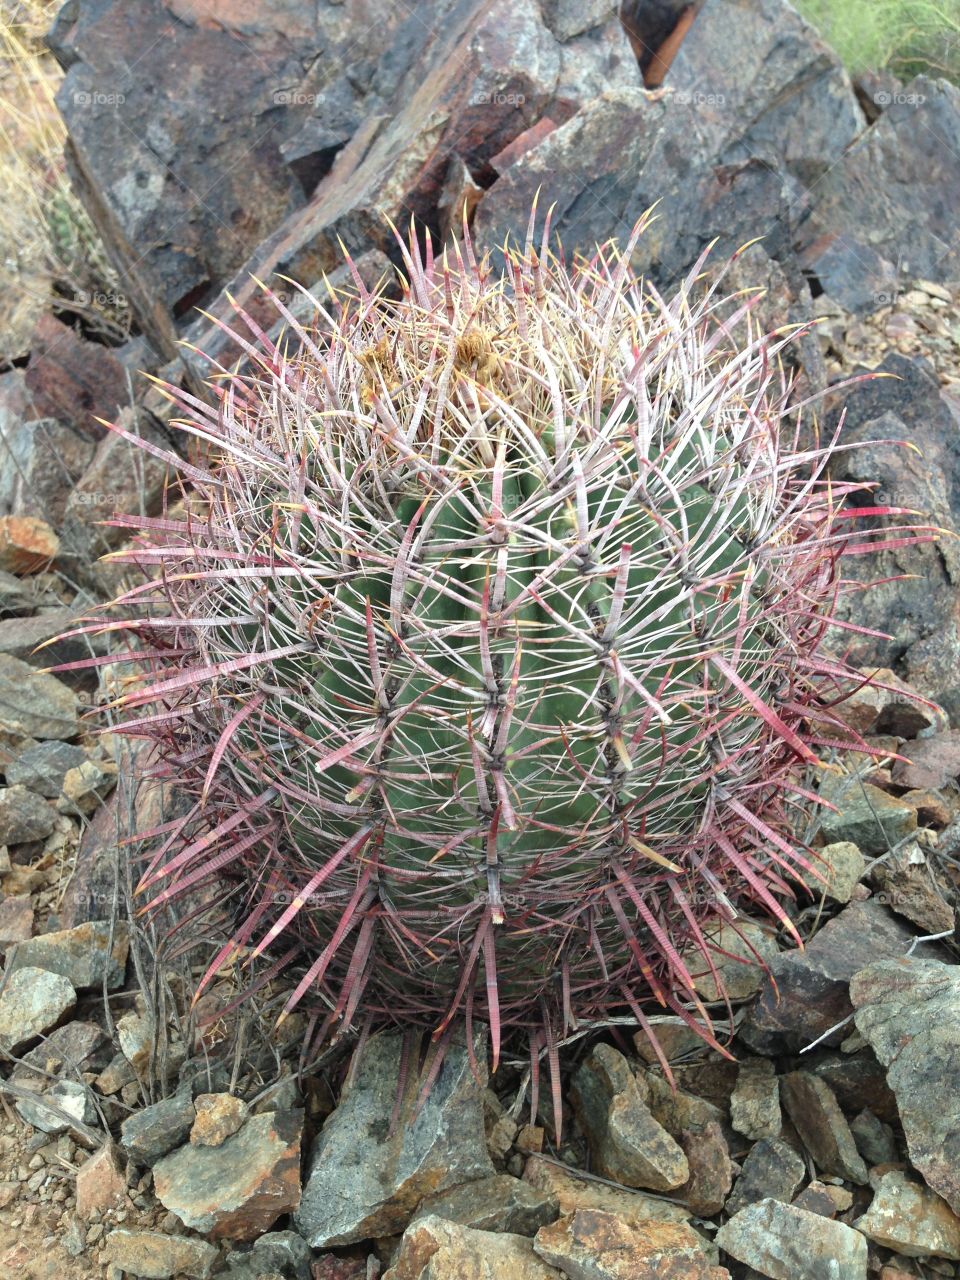 Small Round Cactus